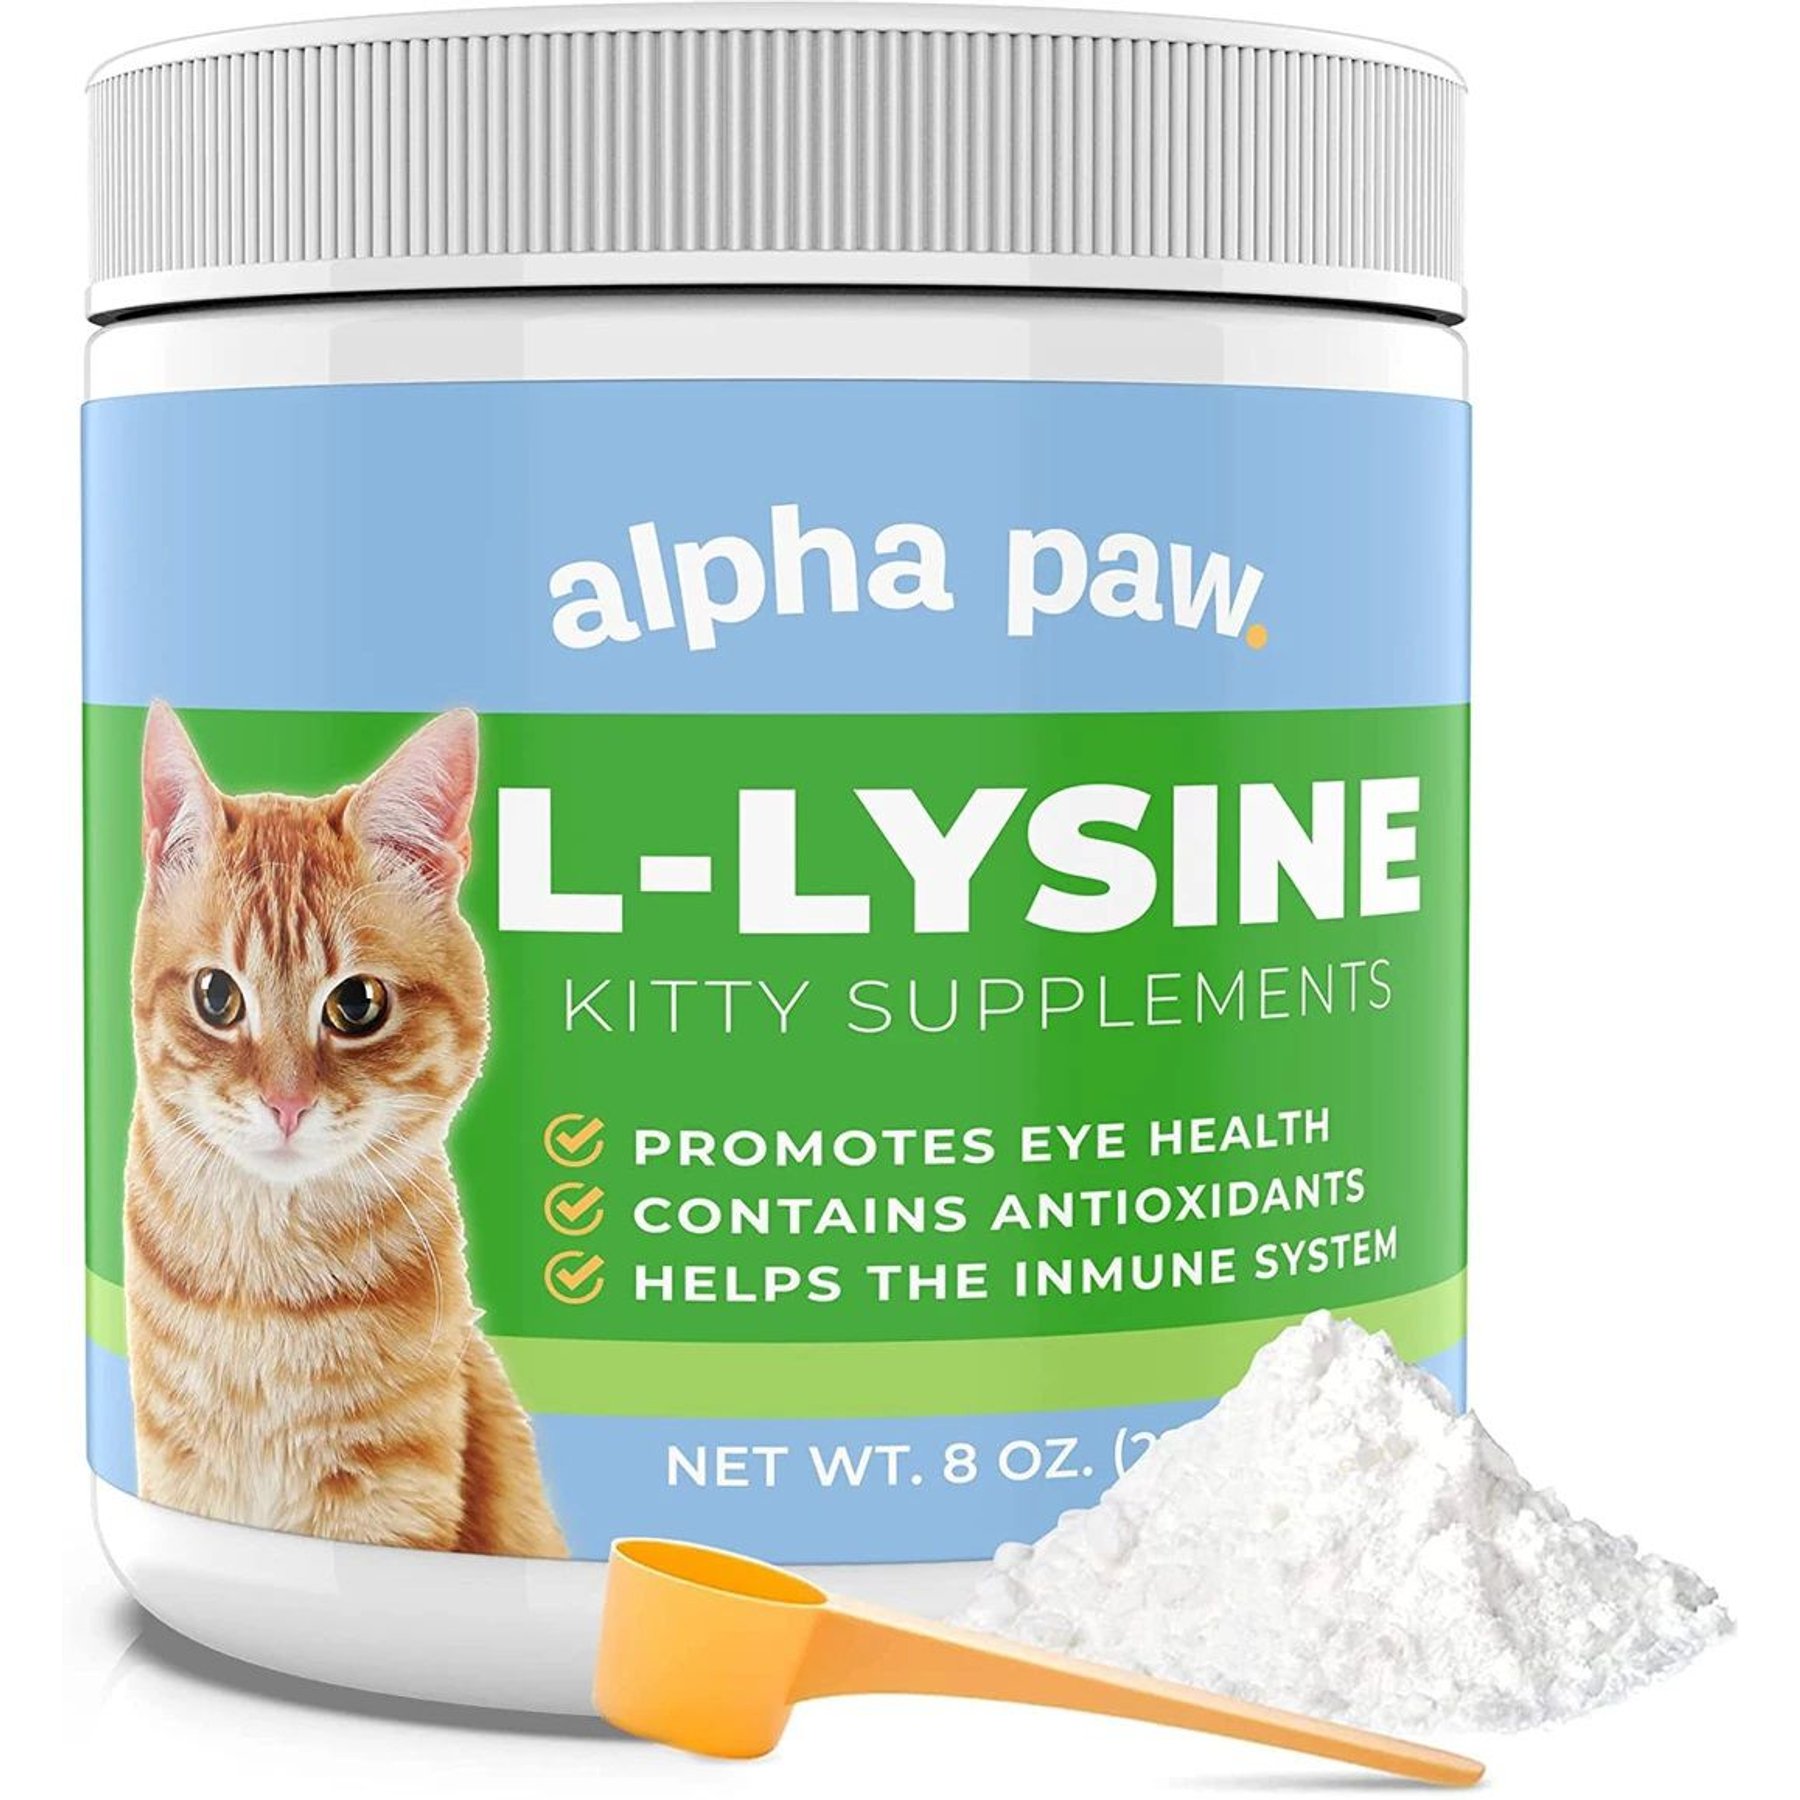 Lysine Aid Gel Chat 50 ml